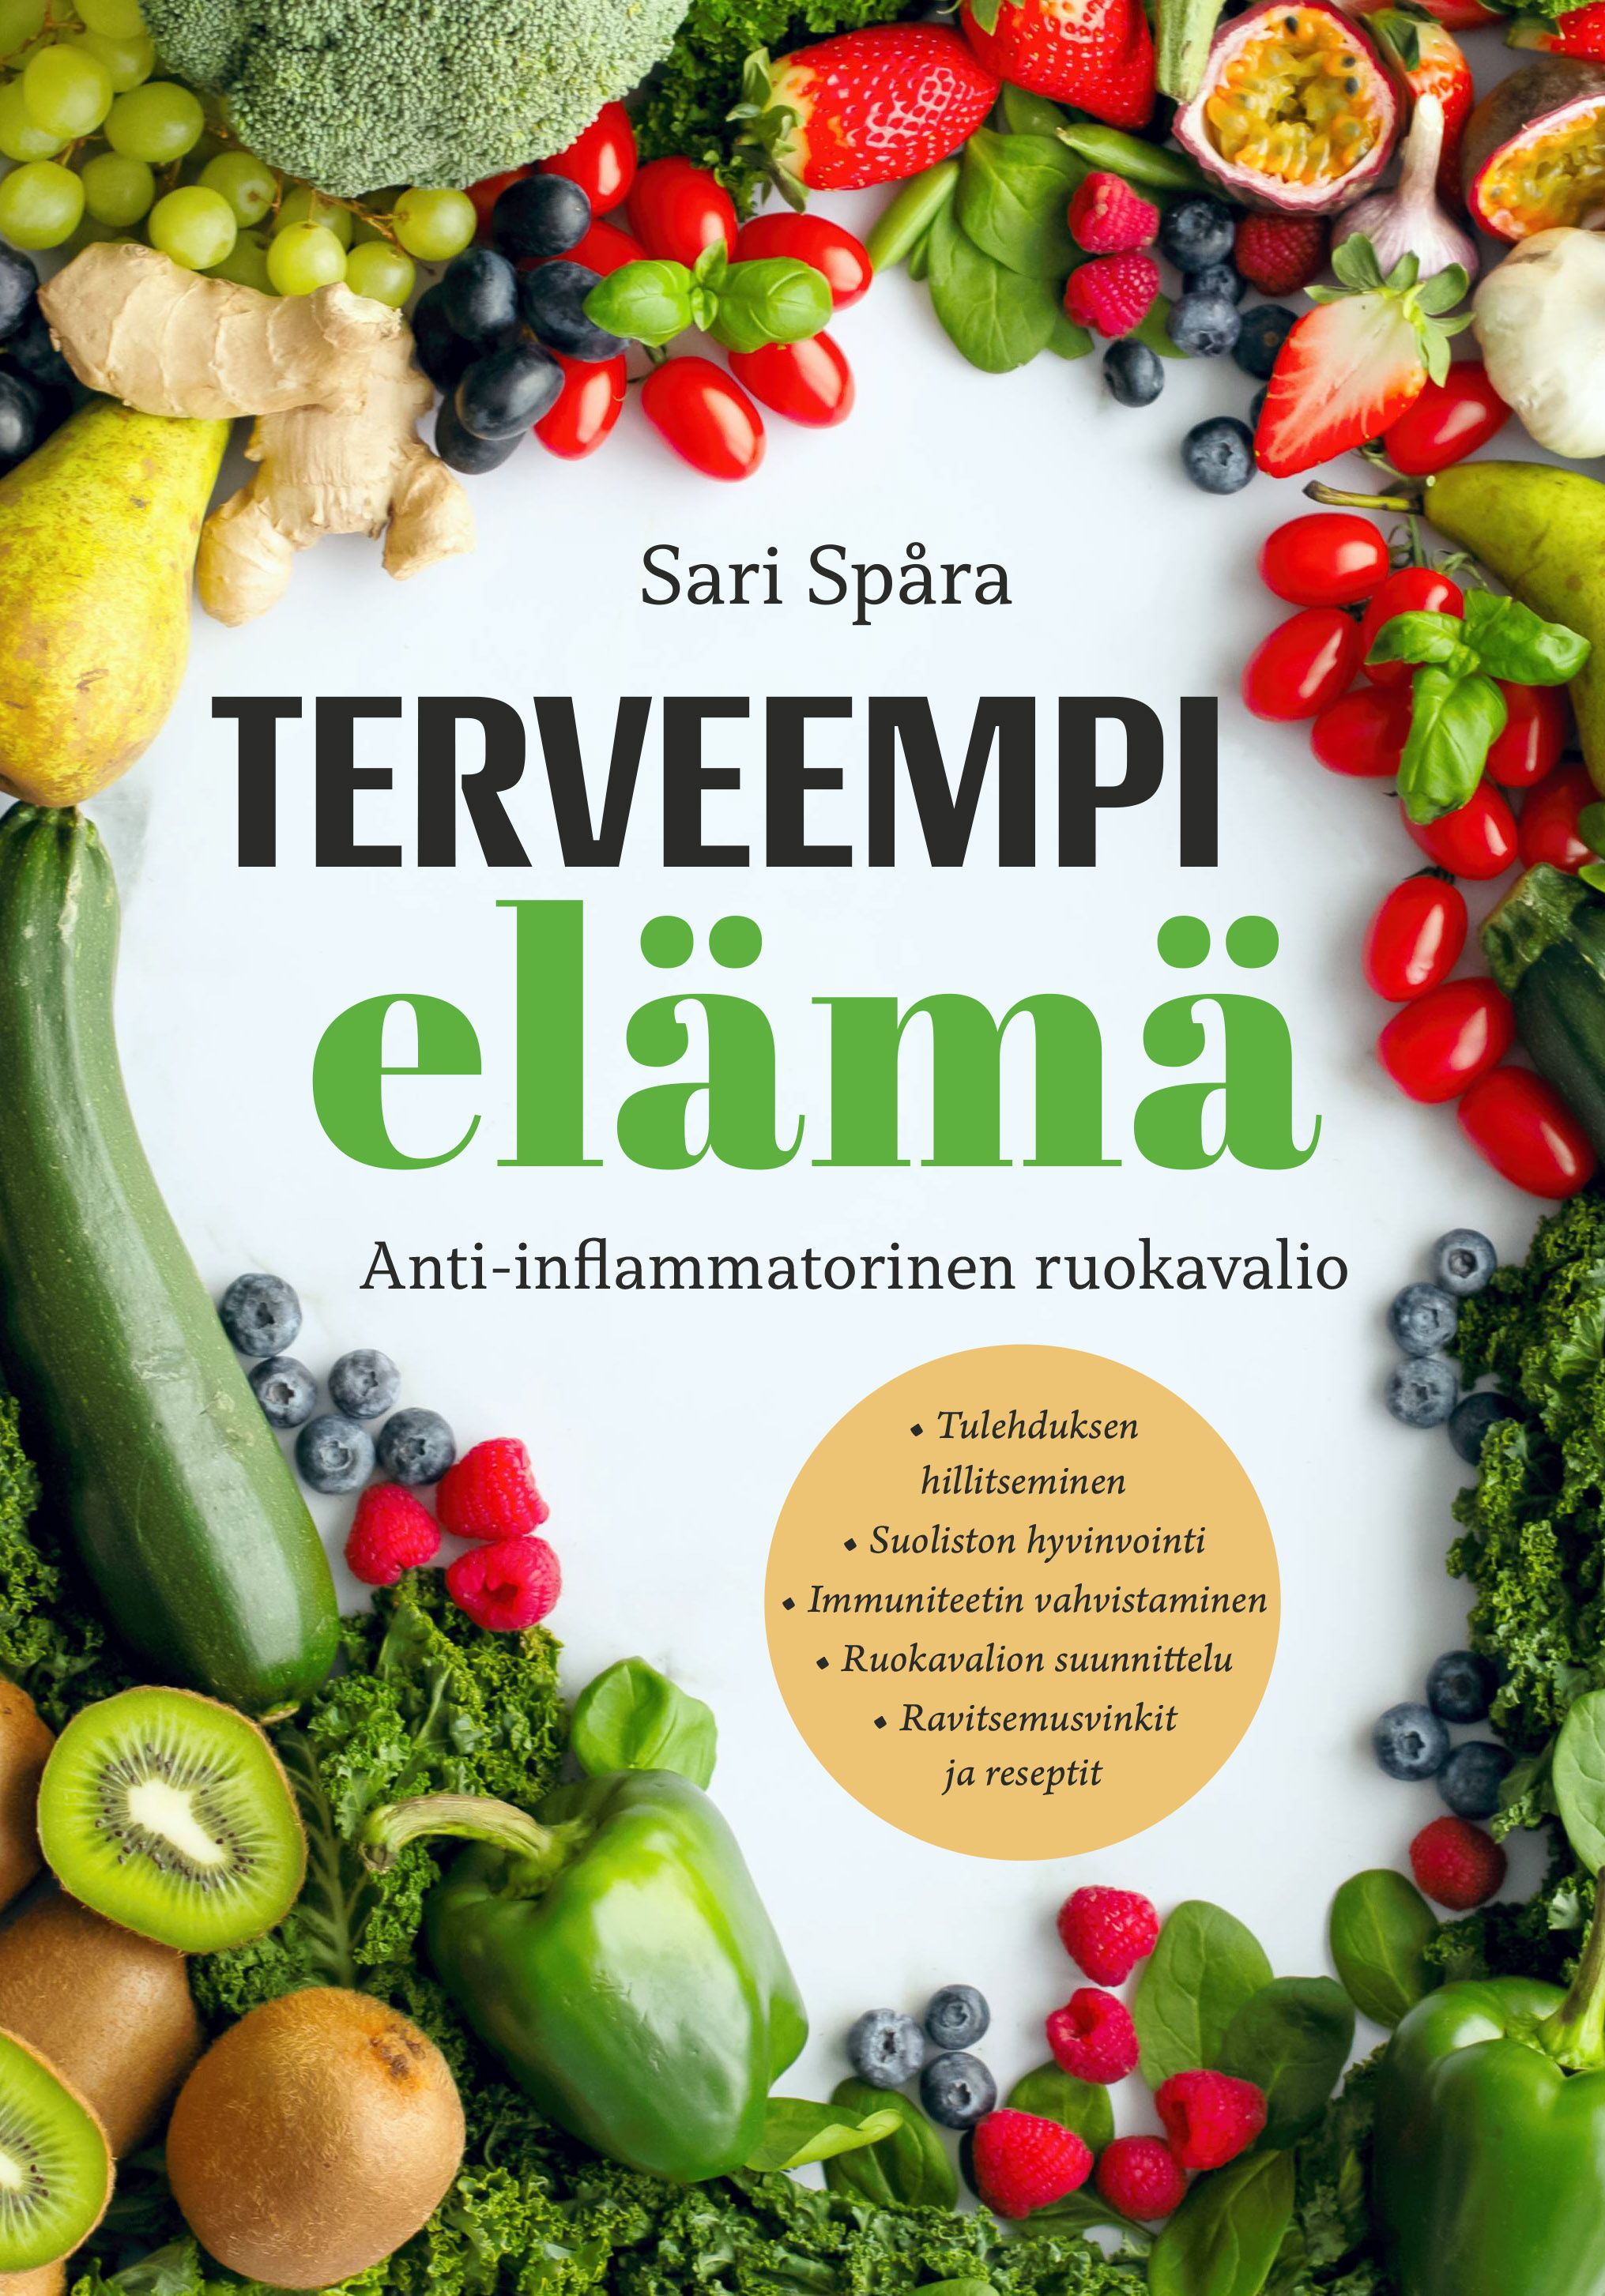 Sari Spåra : Terveempi elämä - Anti-inflammatorinen ruokavalio